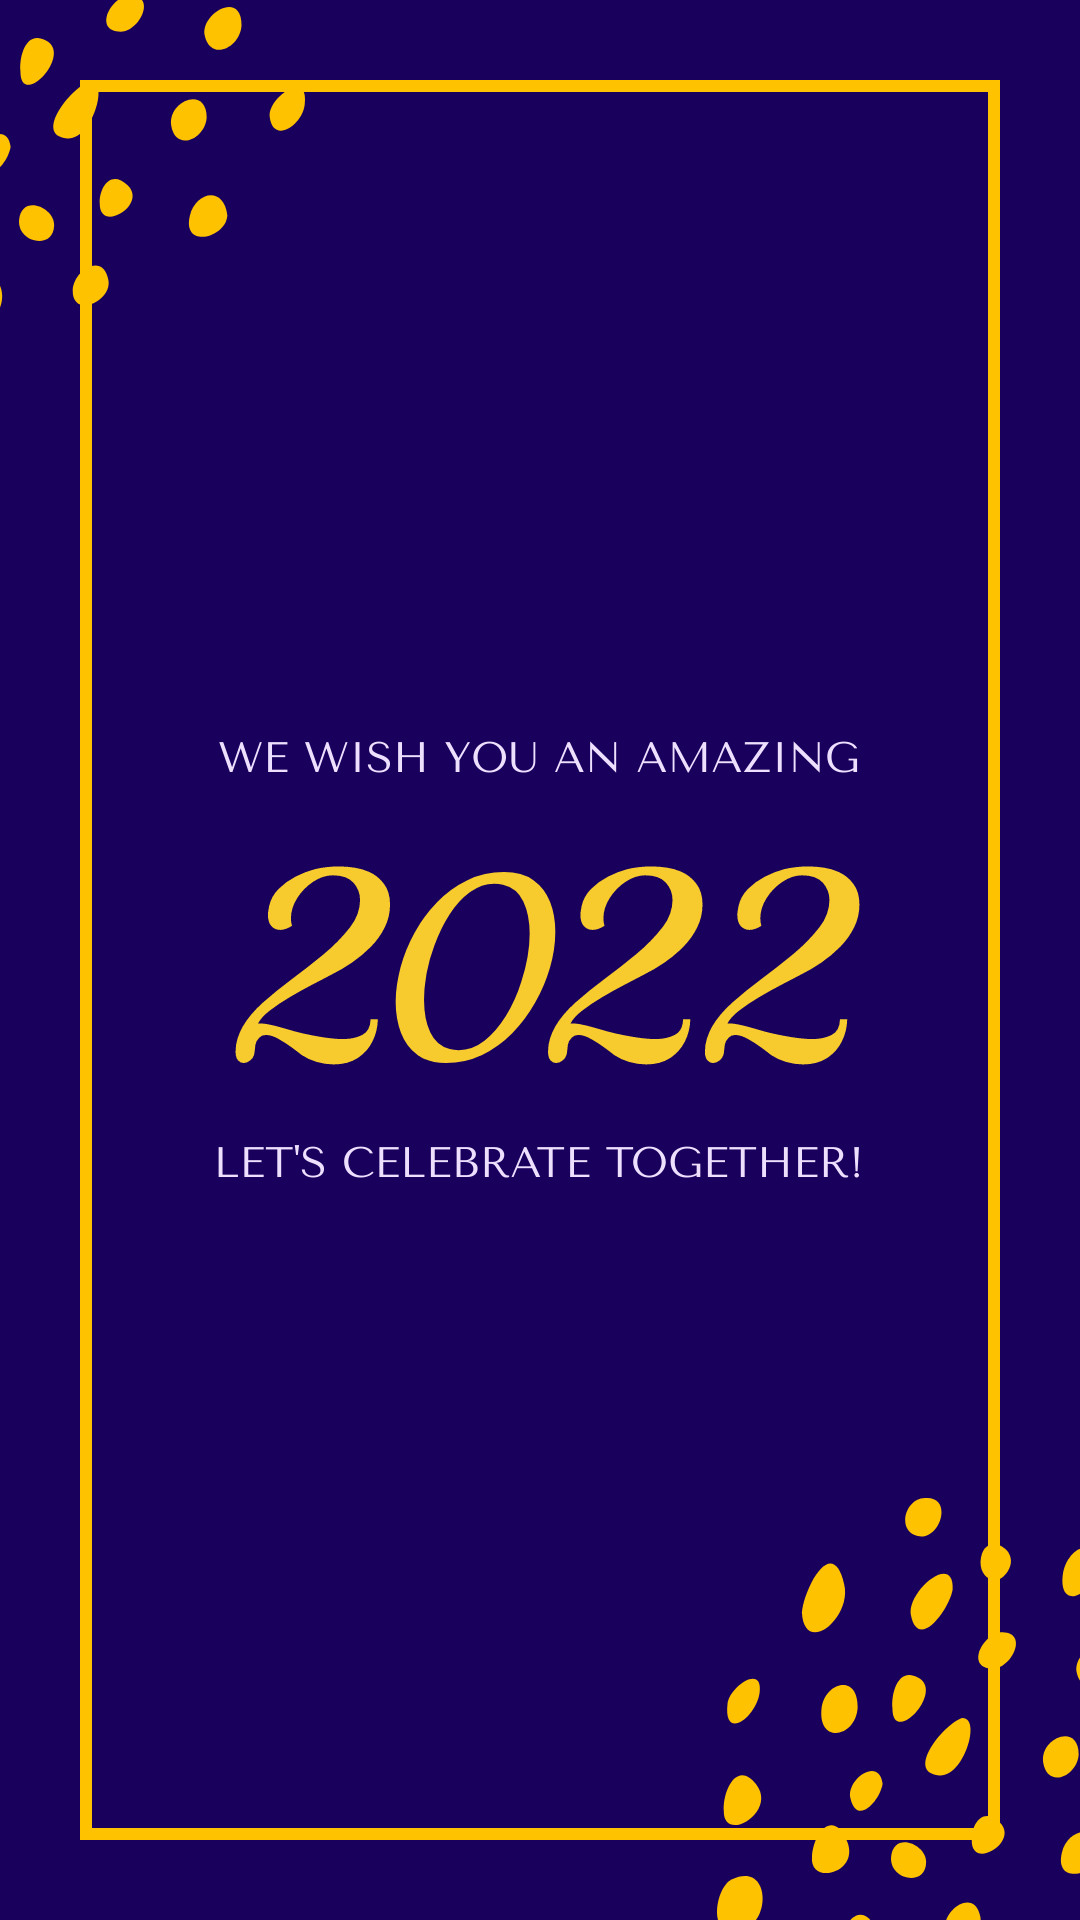 Celebrate Amazing 2022 Together